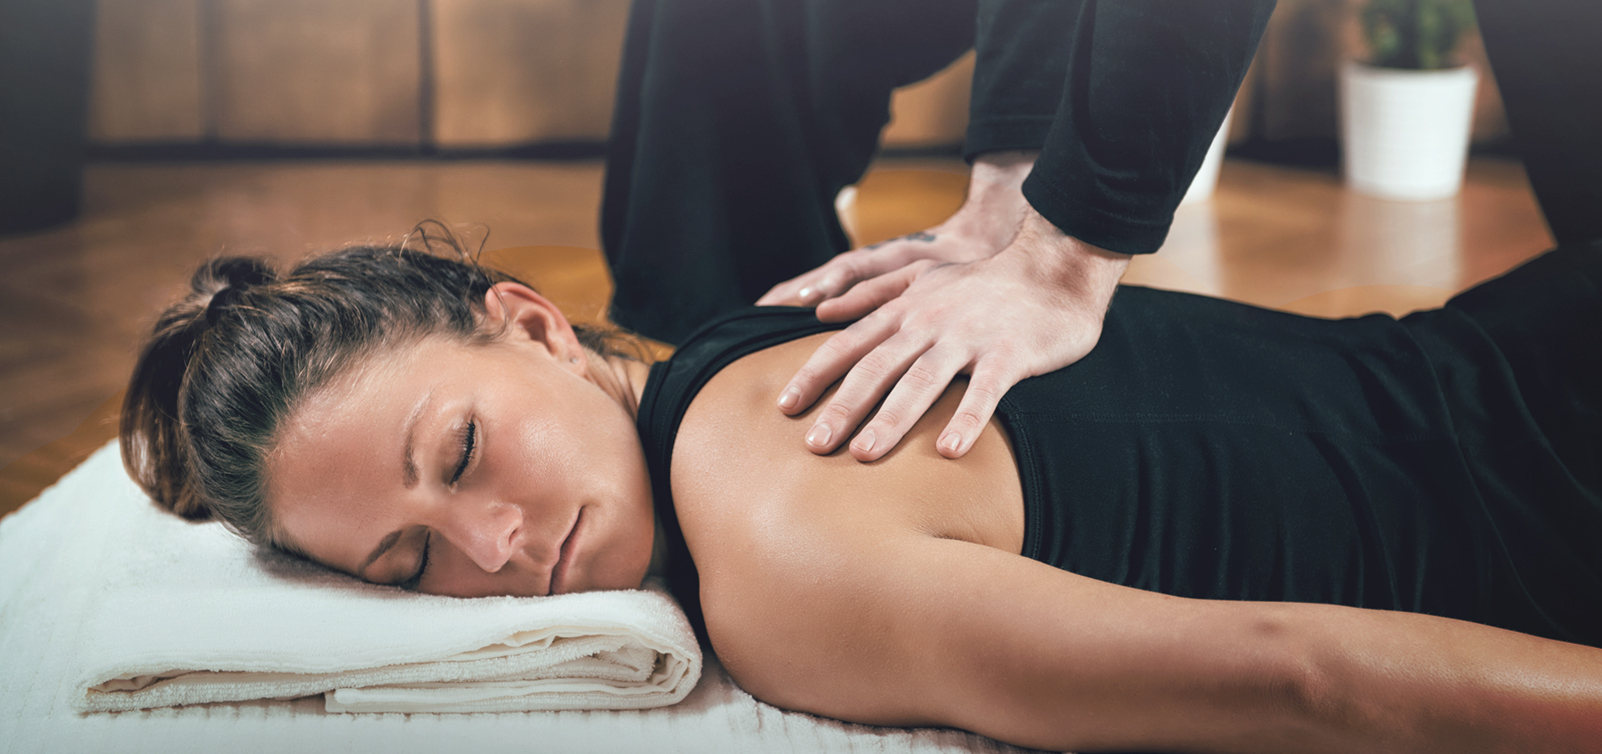 All About Shiatsu Massage - Homedics Blog